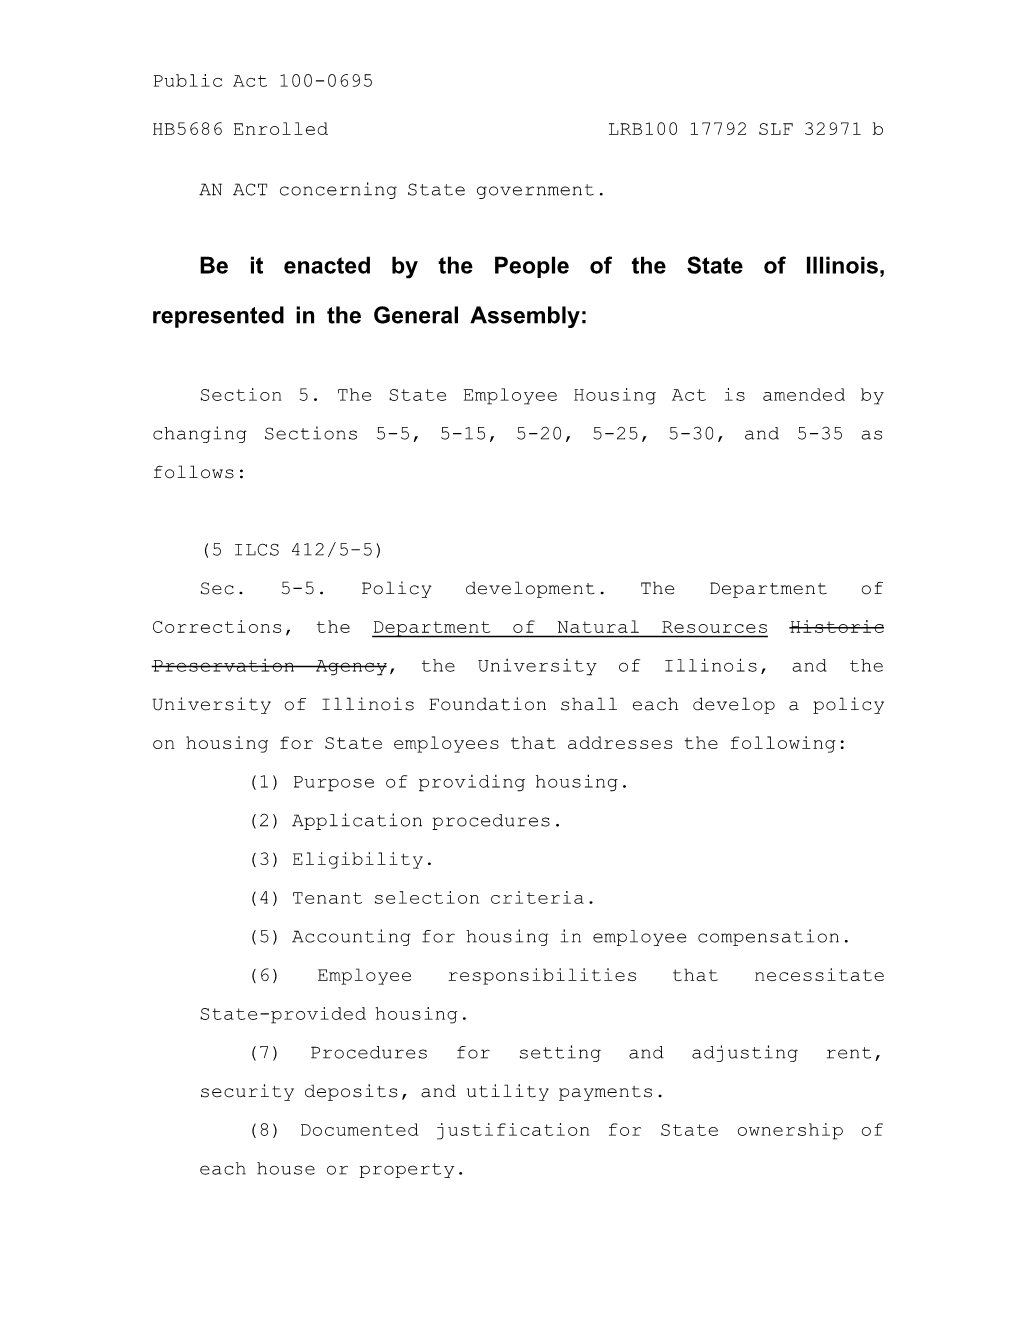 Letter Bill 1..124